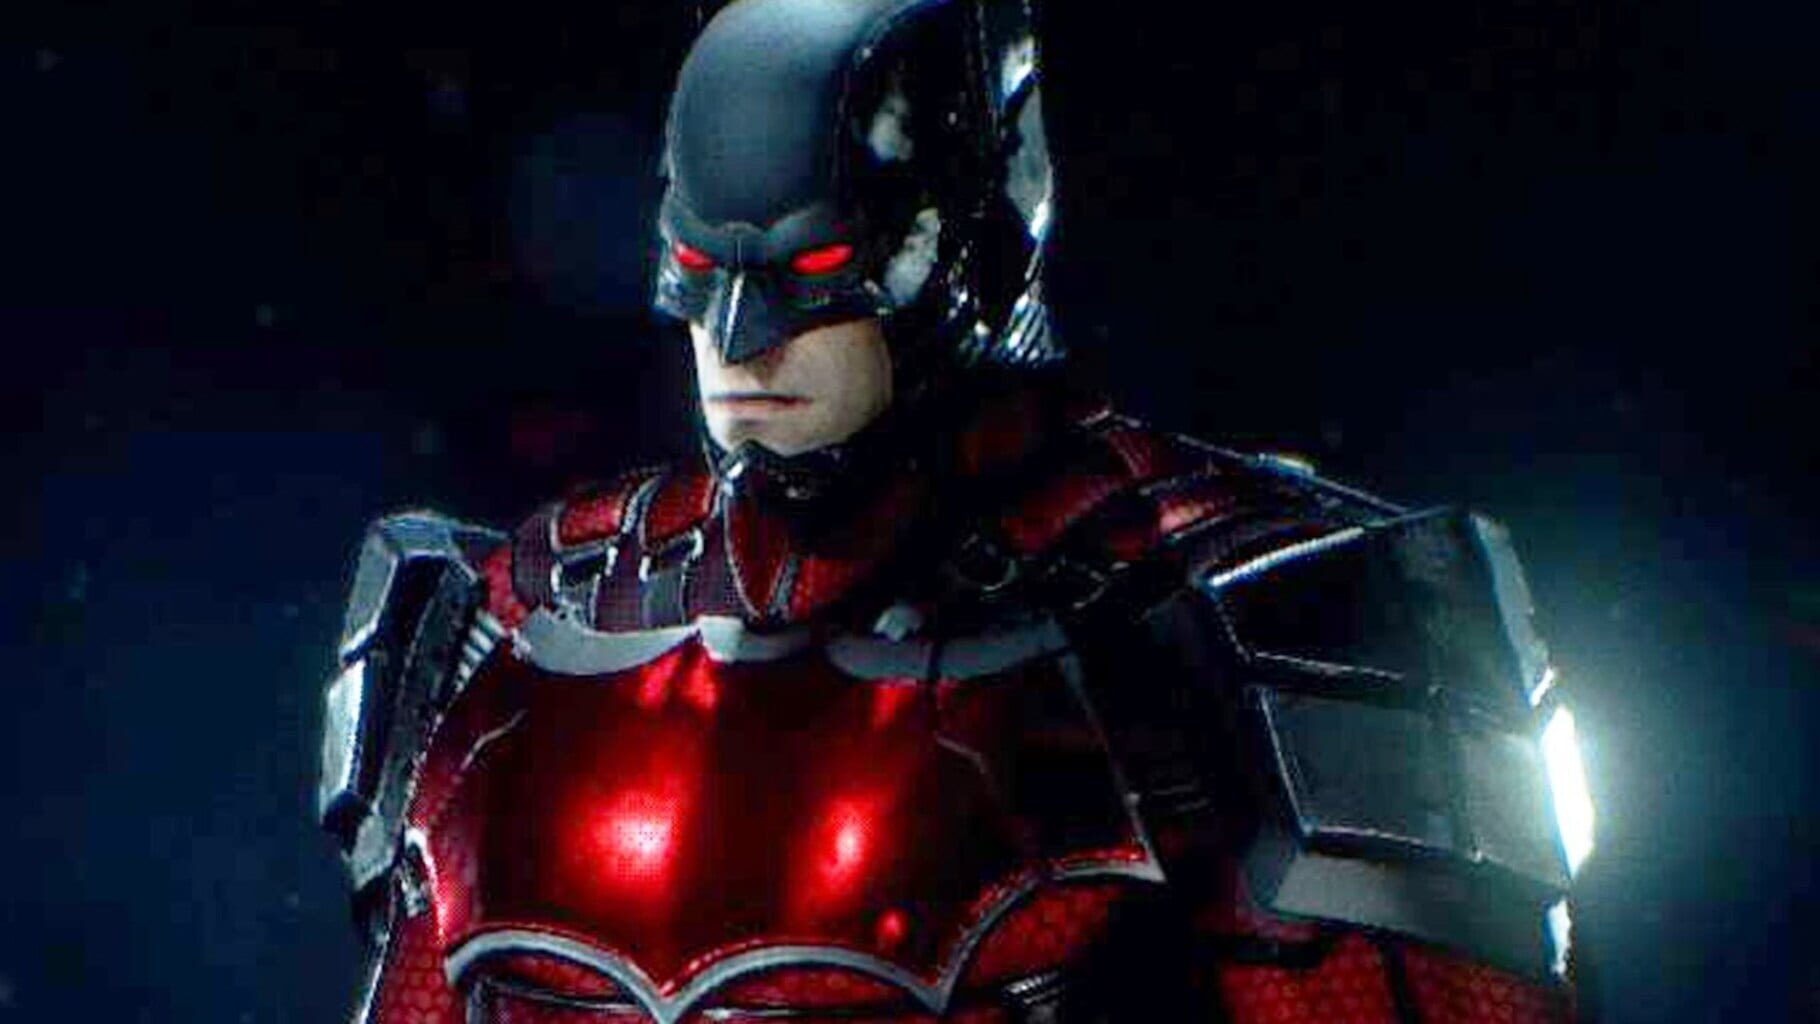 Captura de pantalla - Batman: Arkham Knight - PlayStation 4 Exclusive Skins Pack